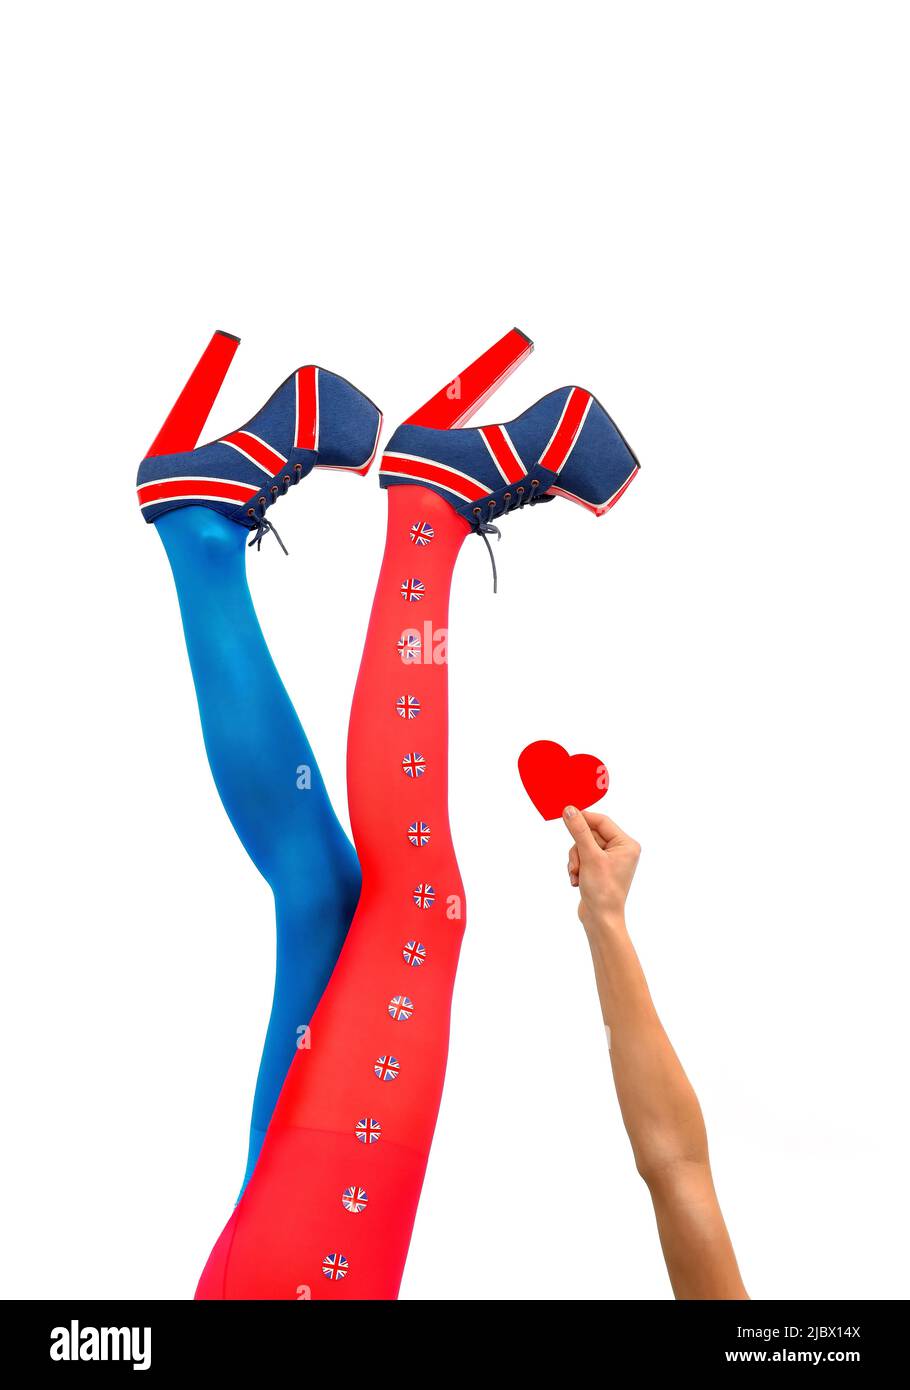 Le gambe femminili sono allungate in alto. Indossano tacchi alti con una bandiera britannica. Il braccio di una donna si allunga tenendo un cuore rosso. Foto Stock